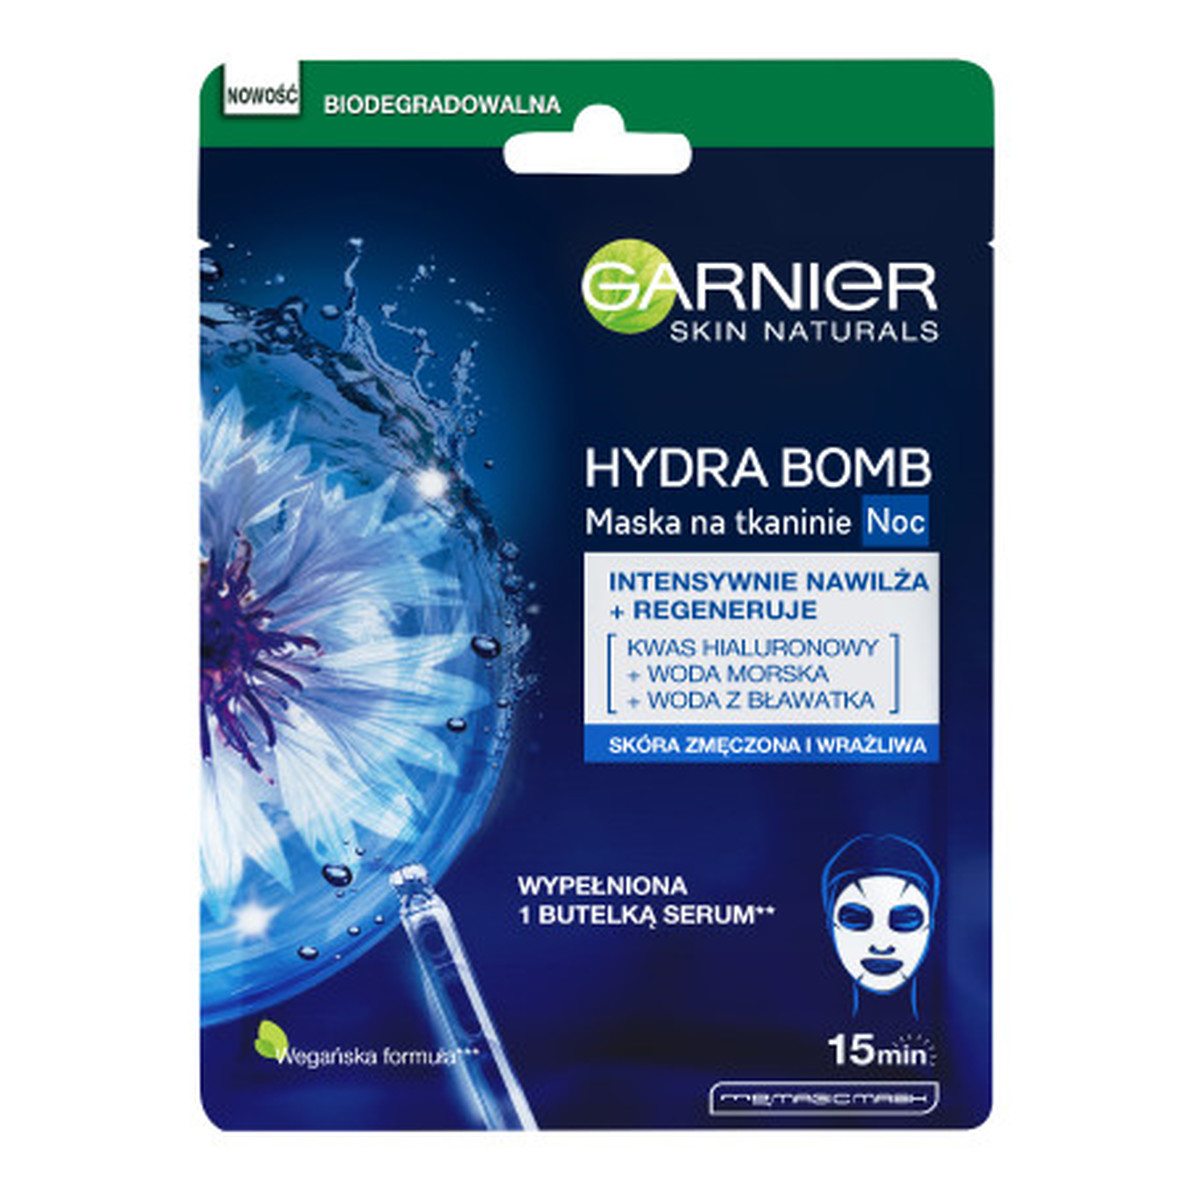 Garnier Hydra Bomb Regenerująca maska na tkaninie na noc z wodą z bławatka 28g